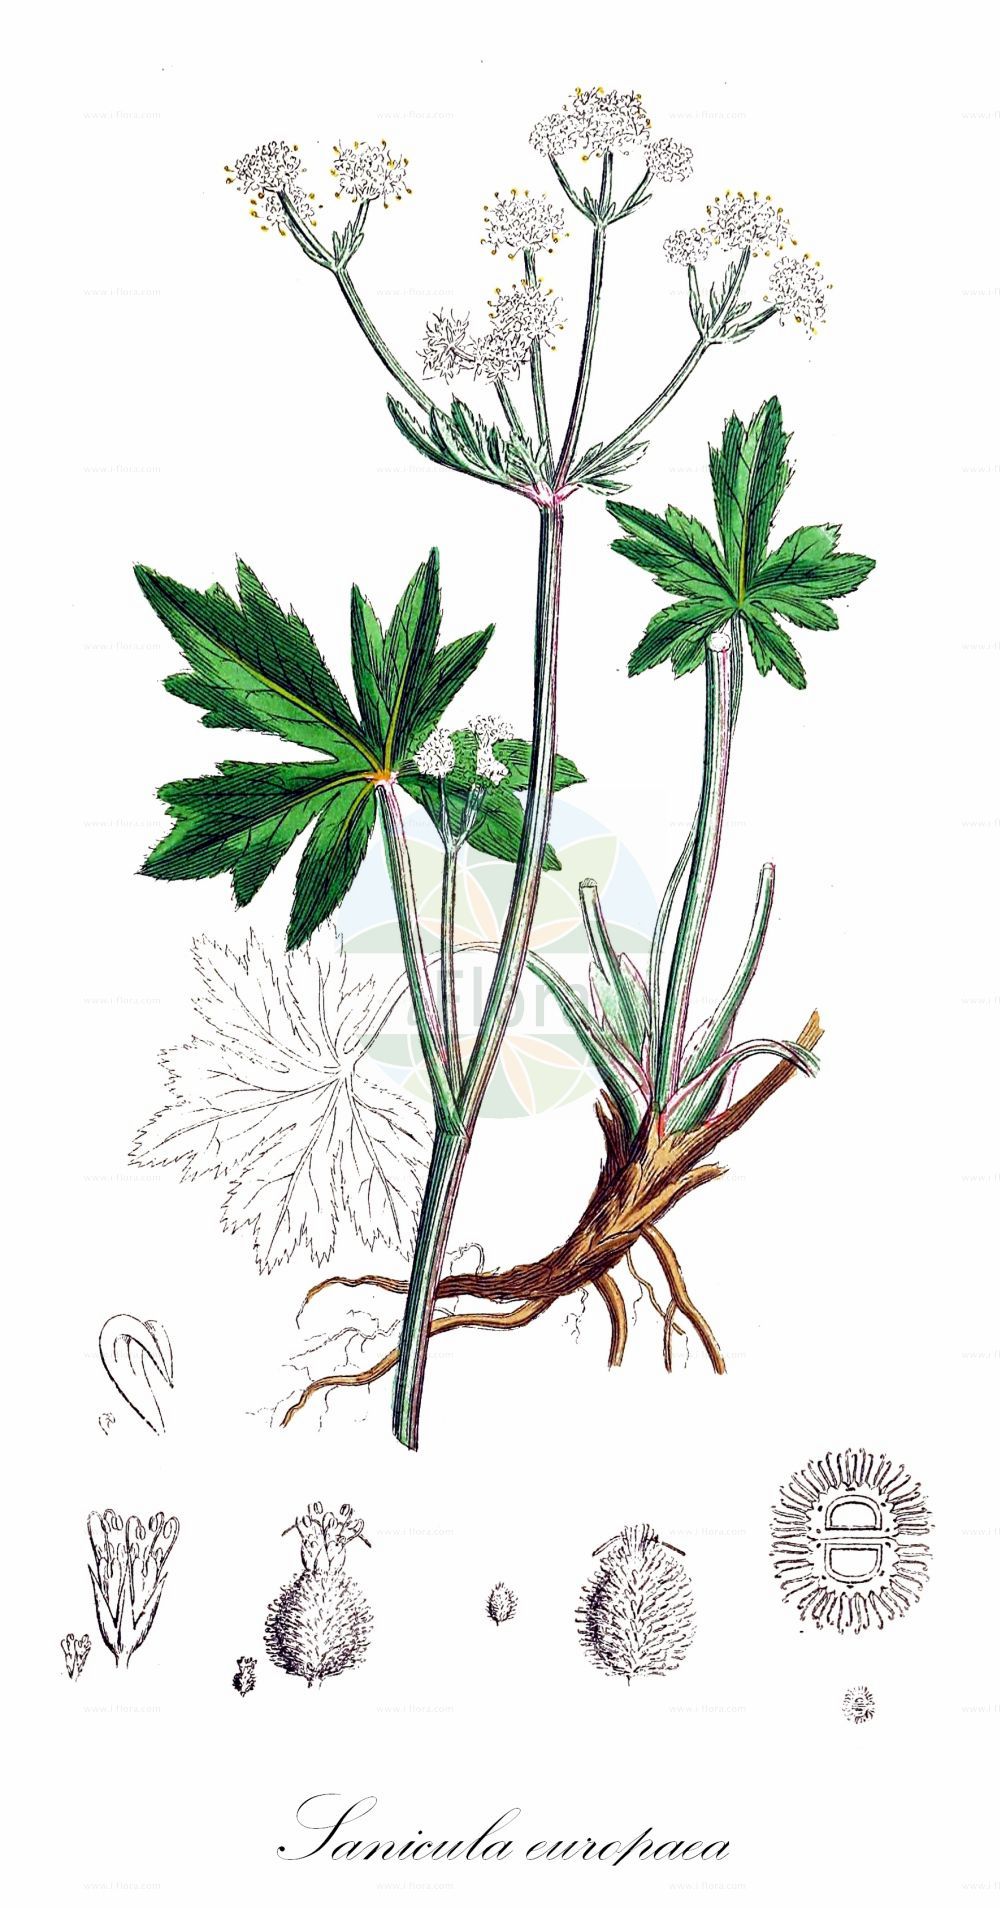 Historische Abbildung von Sanicula europaea (Wald-Sanikel - Sanicle). Das Bild zeigt Blatt, Bluete, Frucht und Same. ---- Historical Drawing of Sanicula europaea (Wald-Sanikel - Sanicle). The image is showing leaf, flower, fruit and seed.(Sanicula europaea,Wald-Sanikel,Sanicle,Sanicula europaea,Wald-Sanikel,Heildolde,Sanikel,Sanicle,Common Sanicle,Sanicula,Sanikel,Sanicle,Apiaceae,Doldengewächse,Carrot family,Blatt,Bluete,Frucht,Same,leaf,flower,fruit,seed,Sowerby (1790-1813))